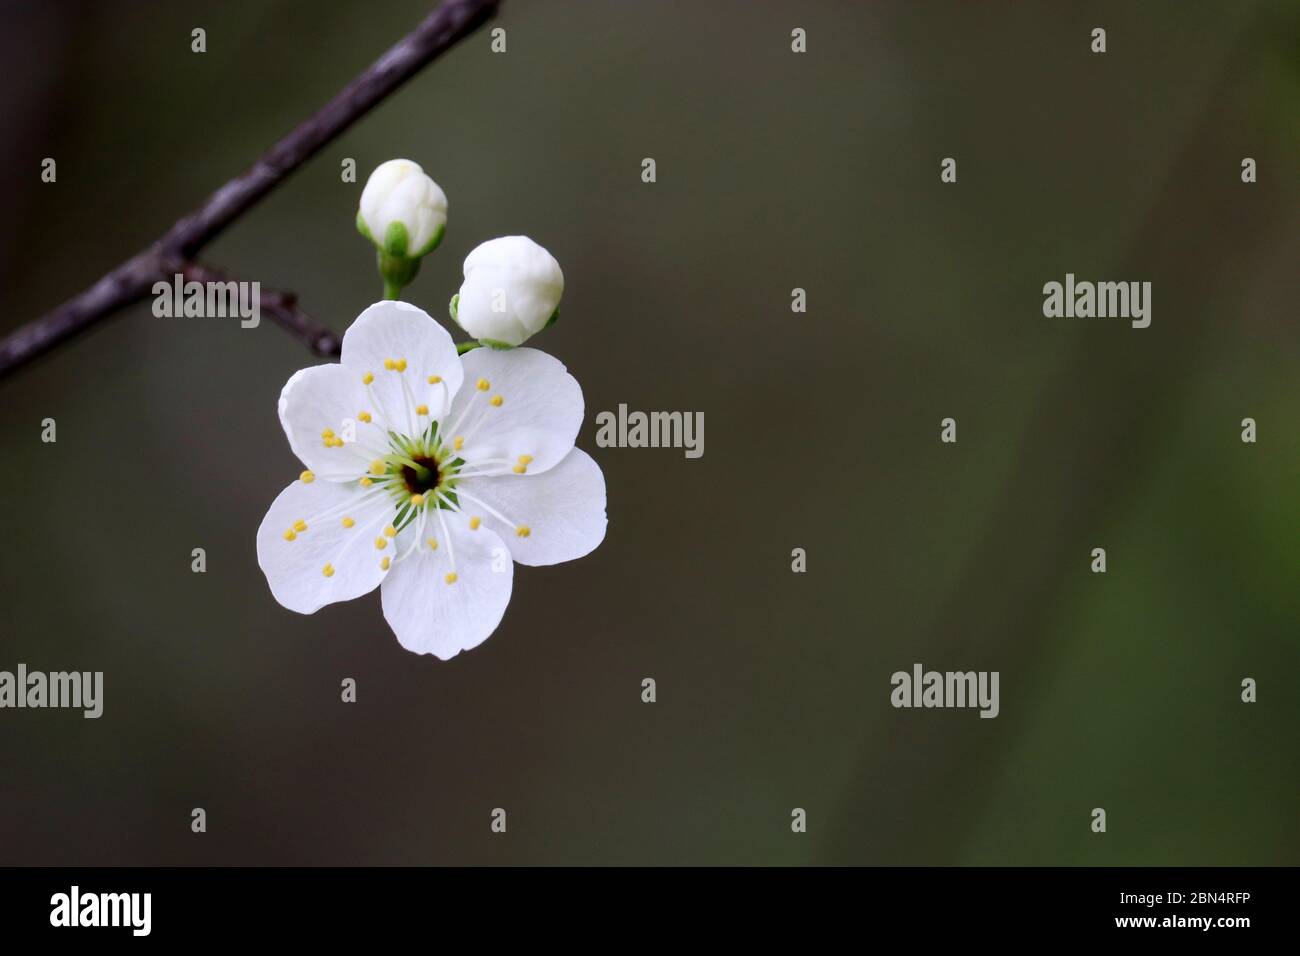 Fleur de cerisier au printemps sur fond vert naturel. Fleurs blanches sur une branche dans un jardin, couleurs douces Banque D'Images